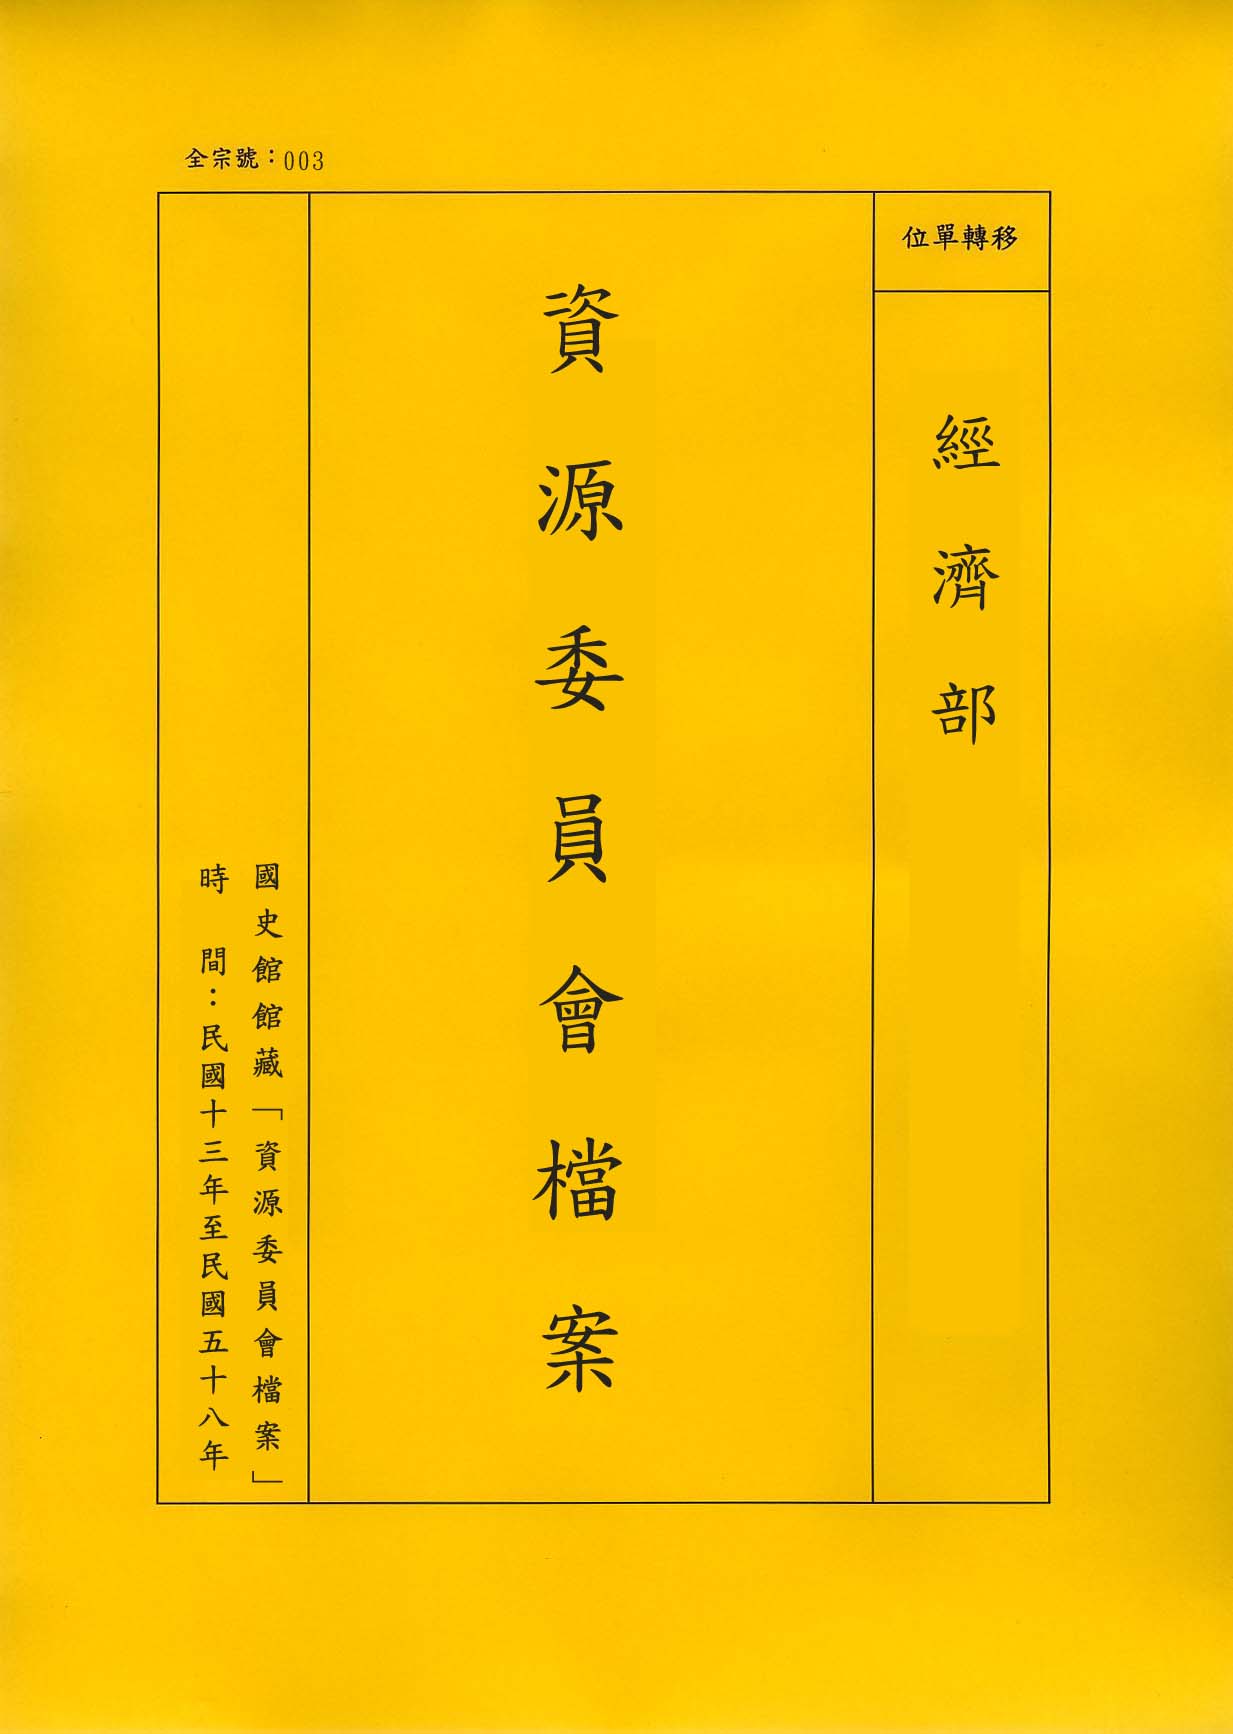 卷名:廣東電廠理事會議紀錄等案(003-010101-0512)